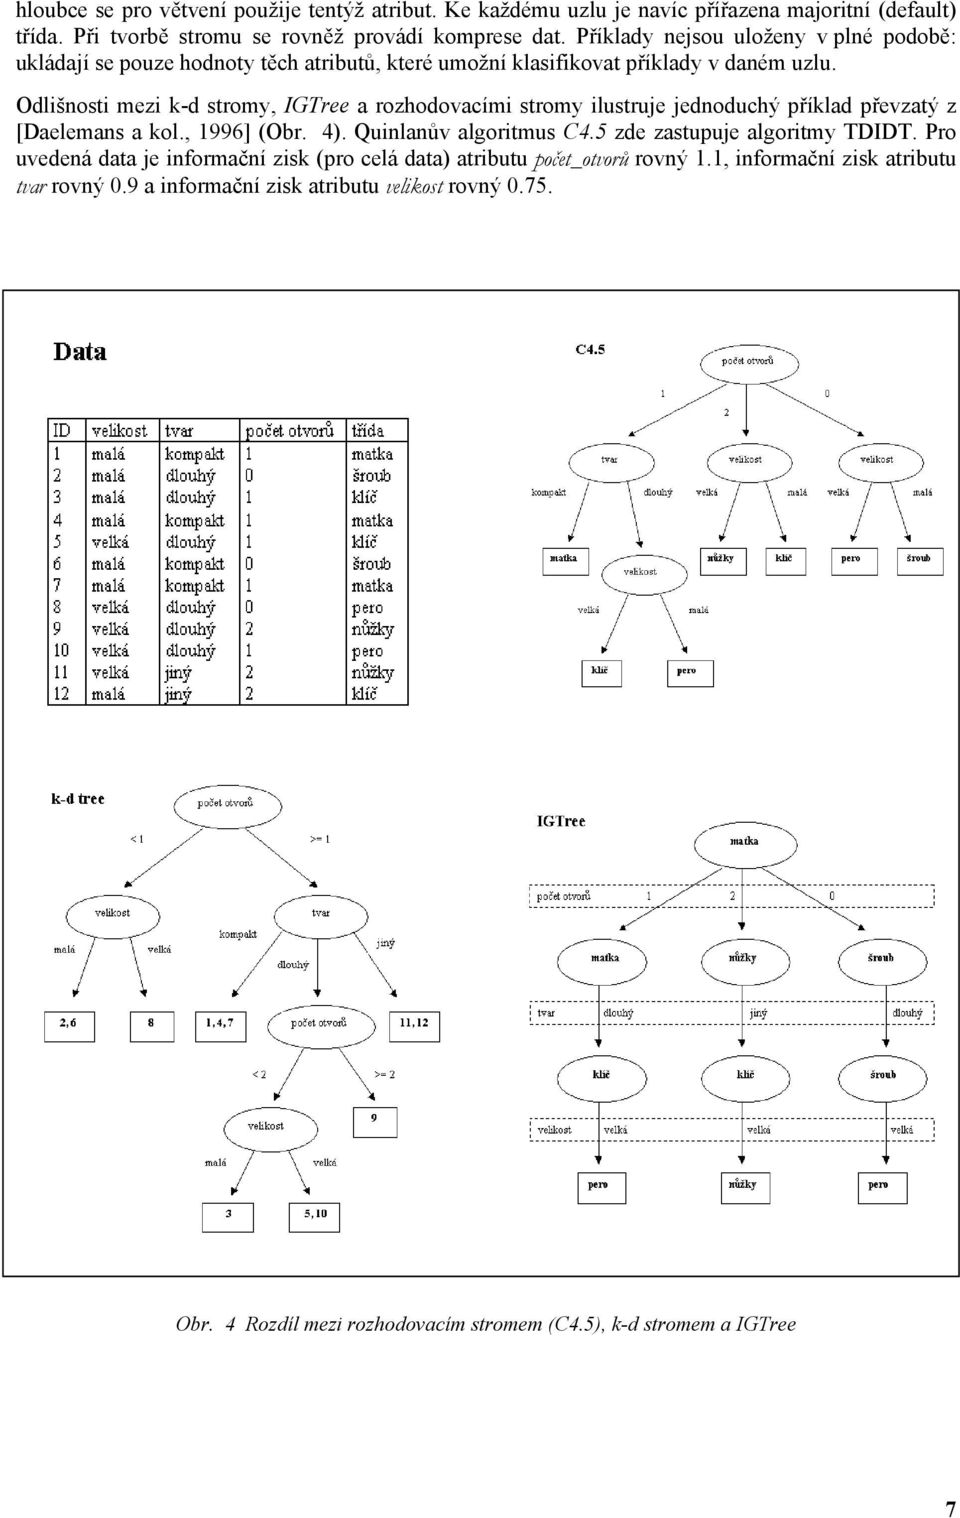 Odlišnosti mezi k-d stromy, IGTree a rozhodovacími stromy ilustruje jednoduchý příklad převzatý z [Daelemans a kol., 1996] (Obr. 4). Quinlanův algoritmus C4.